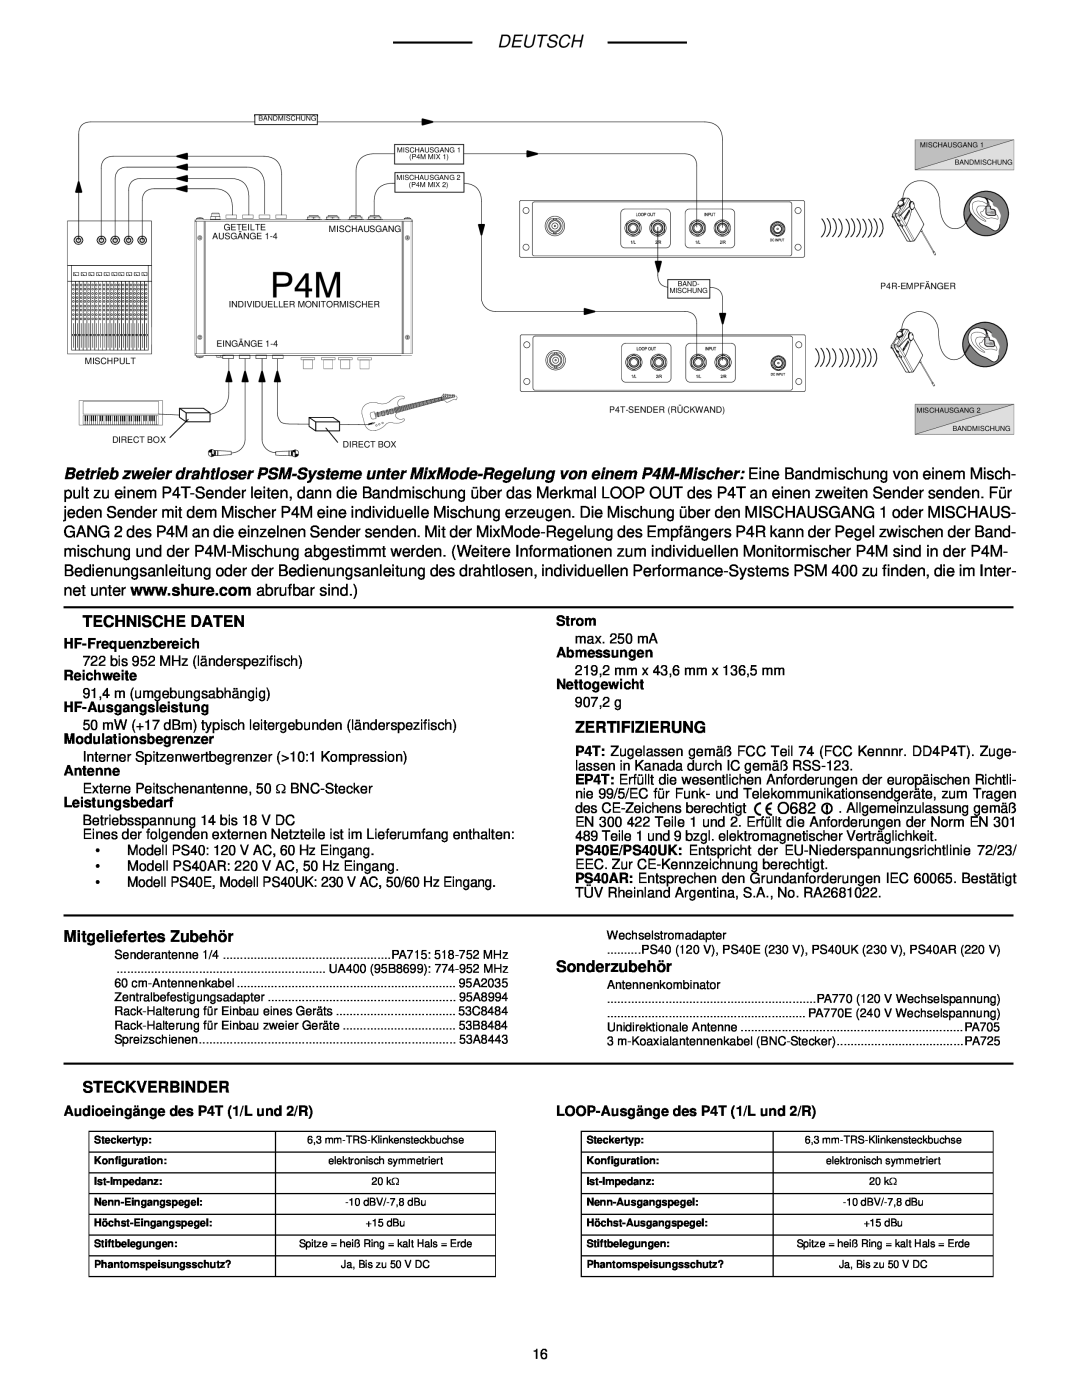 Shure P4T manual Deutsch, Technische Daten, Zertifizierung, Mitgeliefertes Zubehör, Sonderzubehör, Steckverbinder 